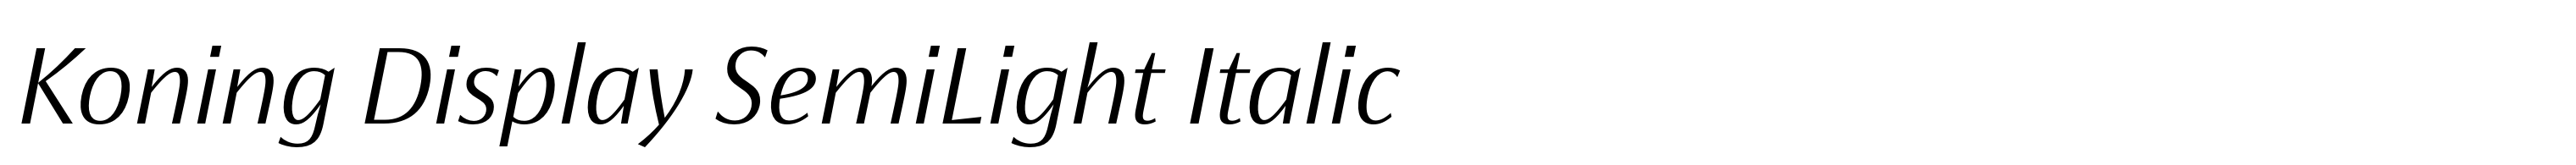 Koning Display SemiLight Italic